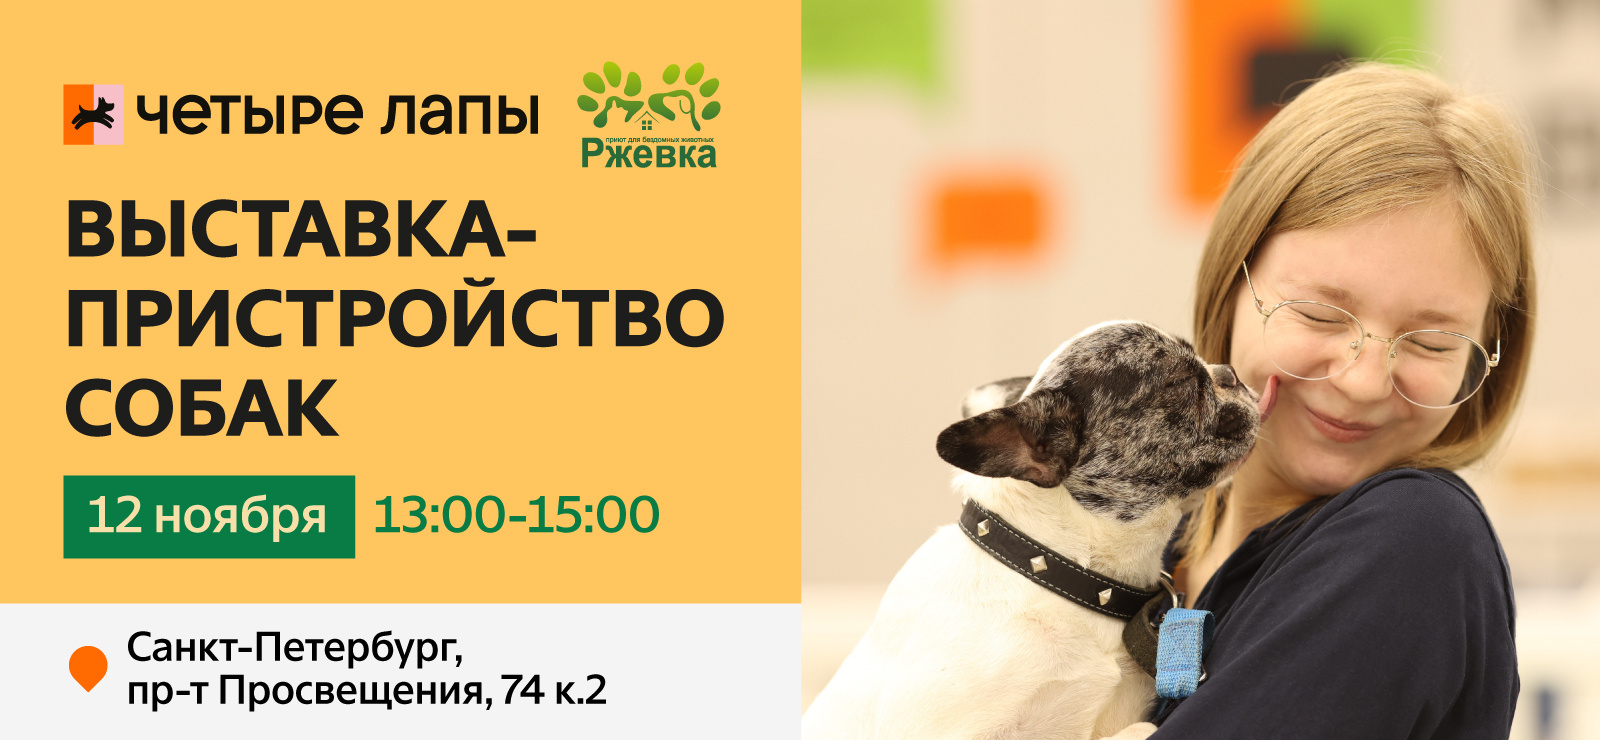 Пристройство собак с Ржевка - новости «Четыре Лапы». 07.11.2022